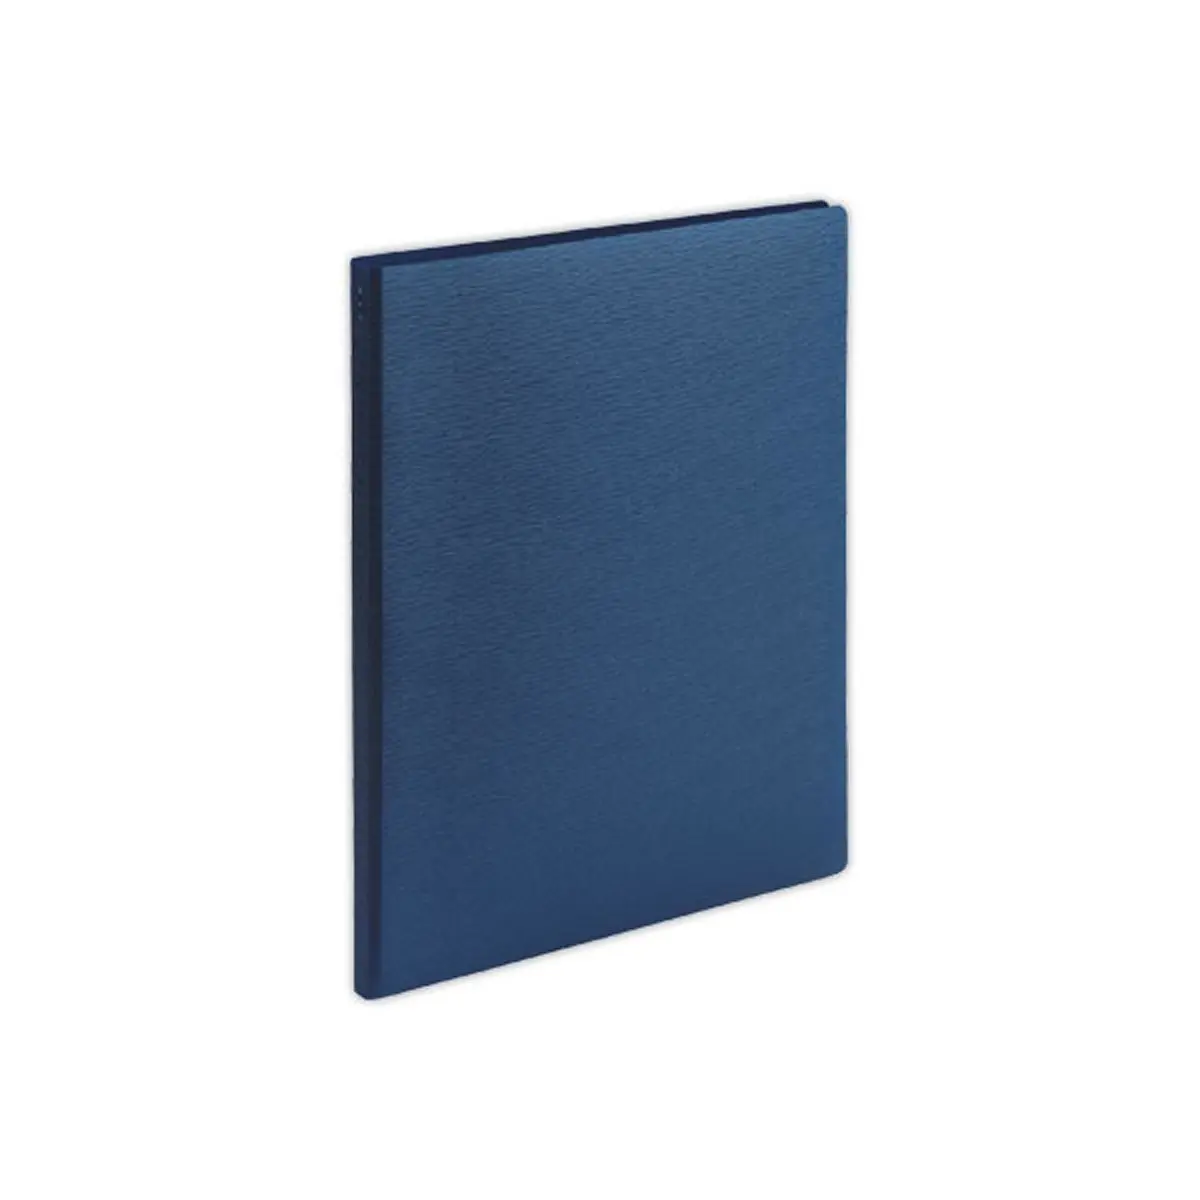 Protège-documents - A4 - 50 poches - bleu foncé - FIDUCIAL photo du produit